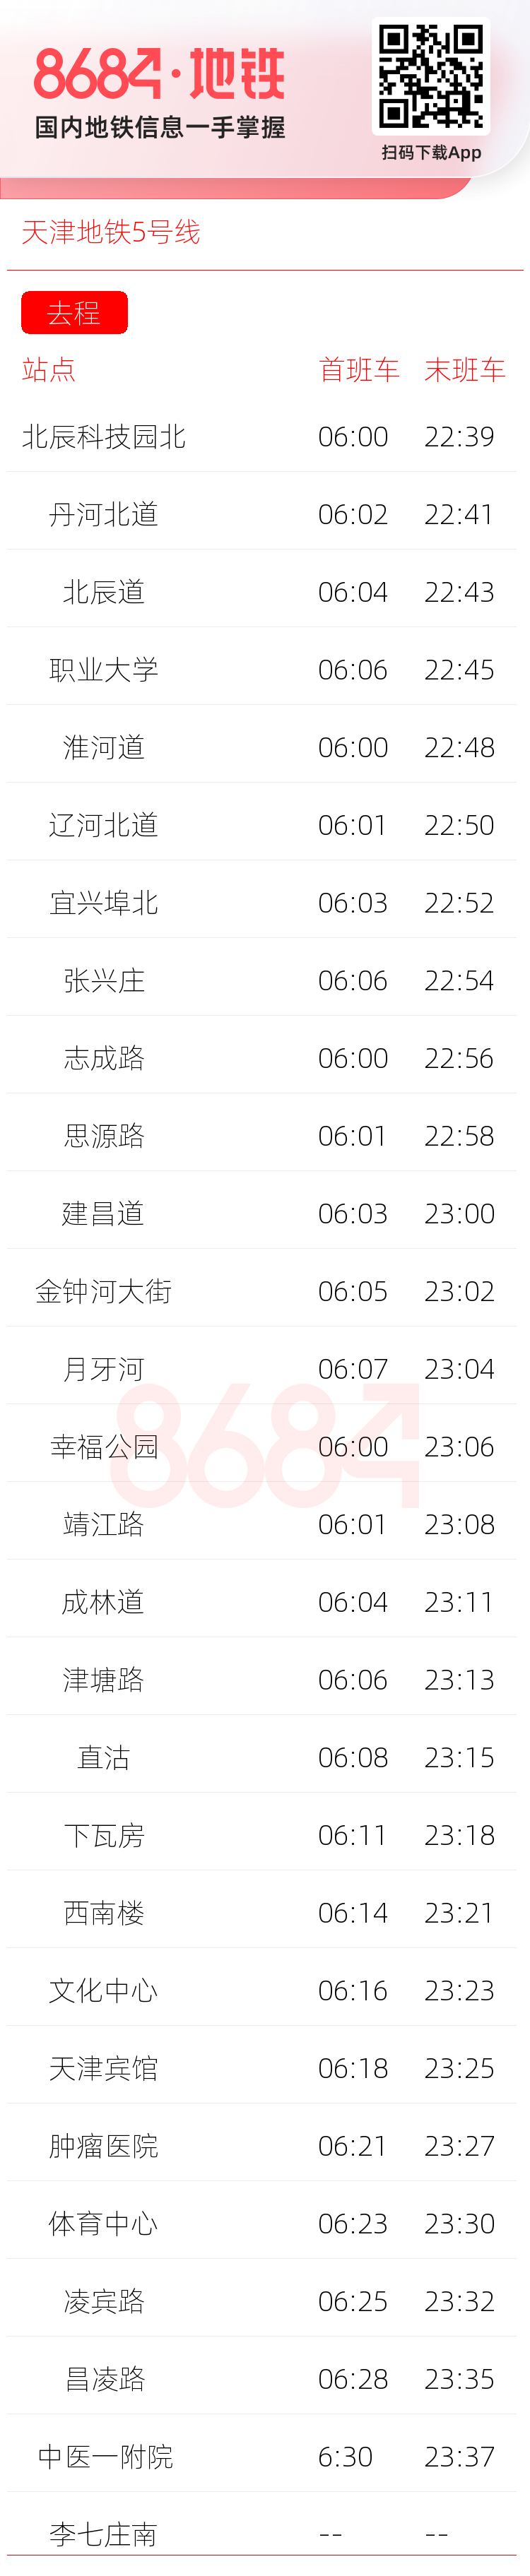 天津地铁5号线运营时间表